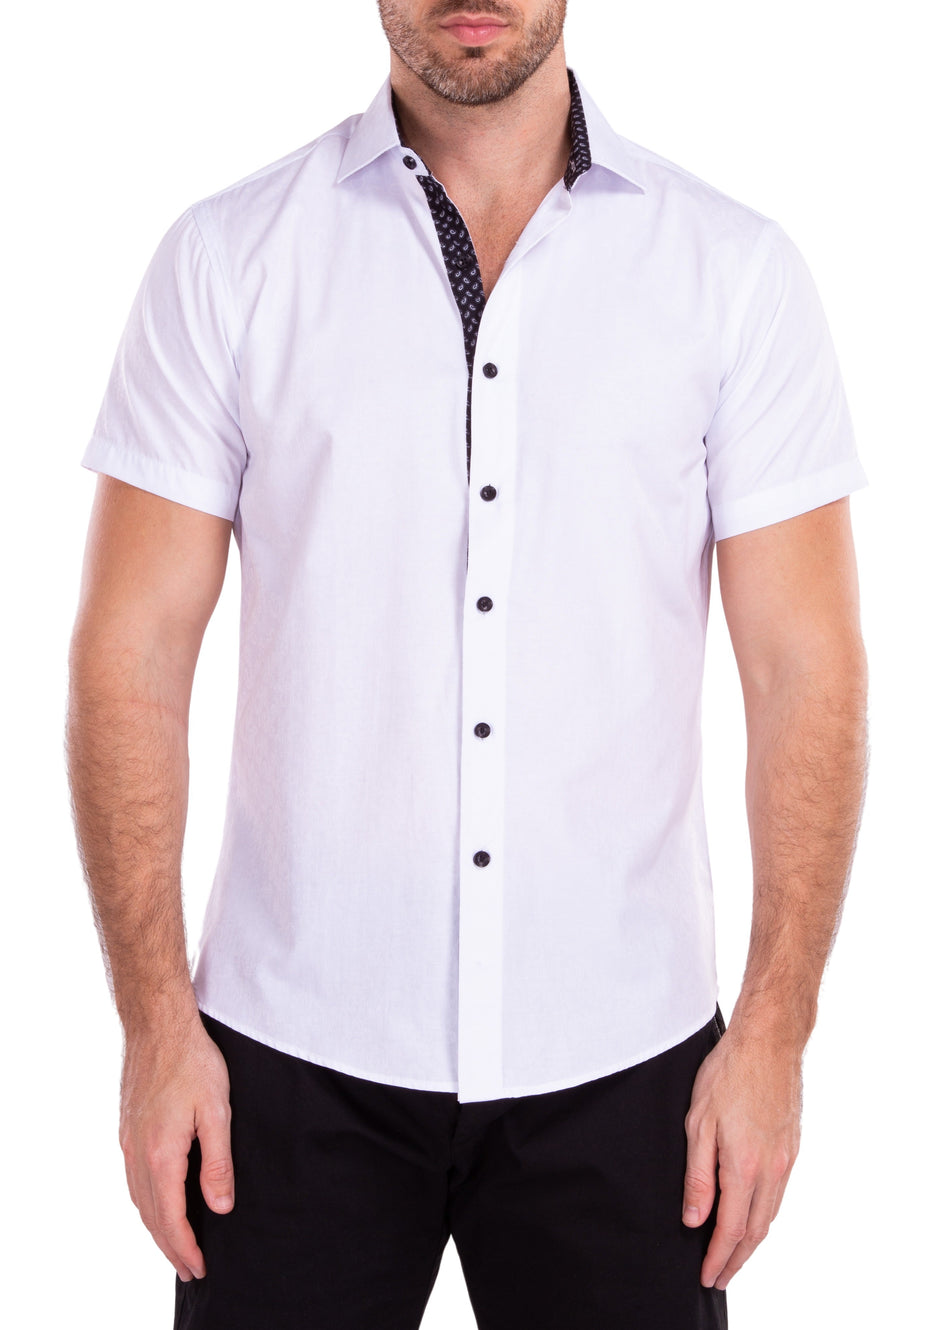 212108 - White Button Up Short Sleeve Dress Shirt